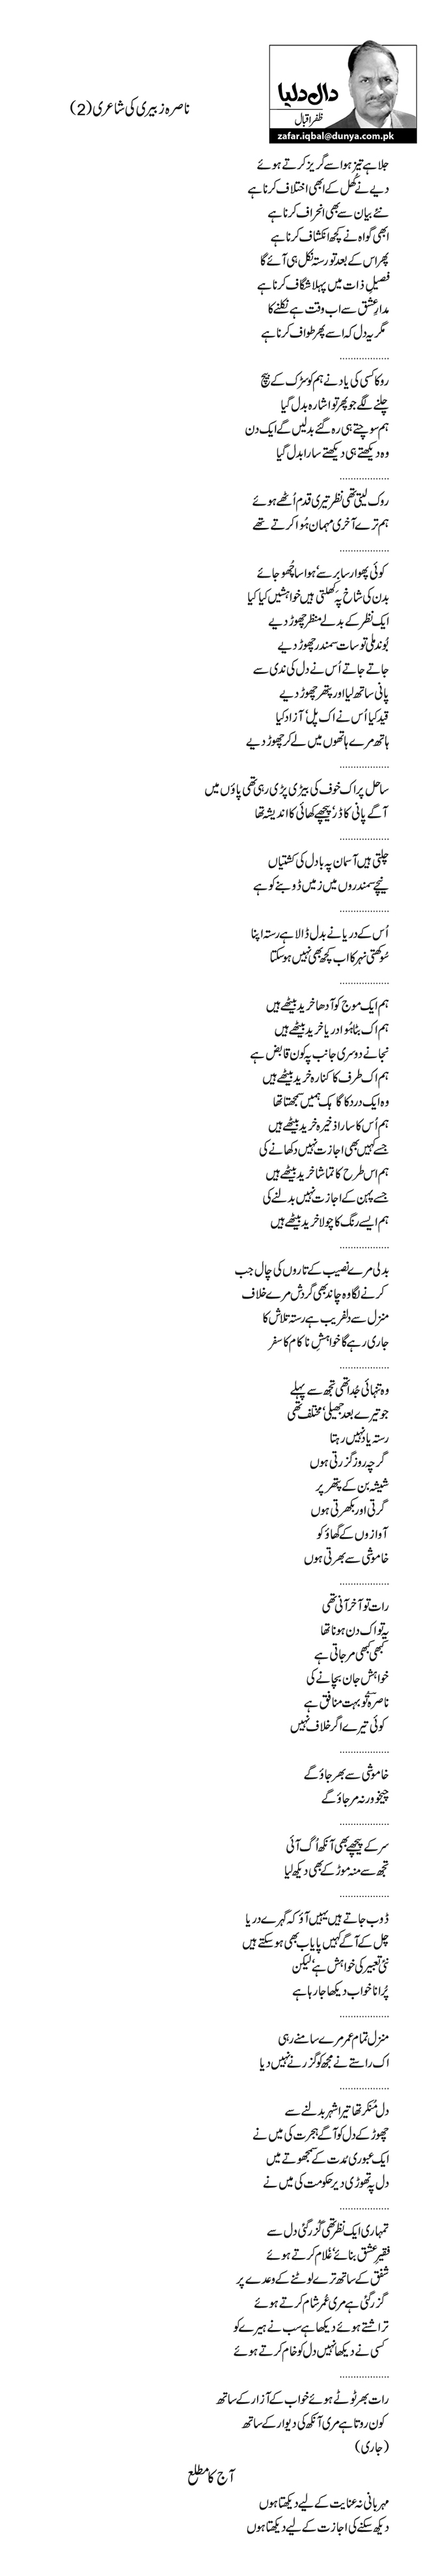 ناصرہ زبیری کی شاعری(2)            